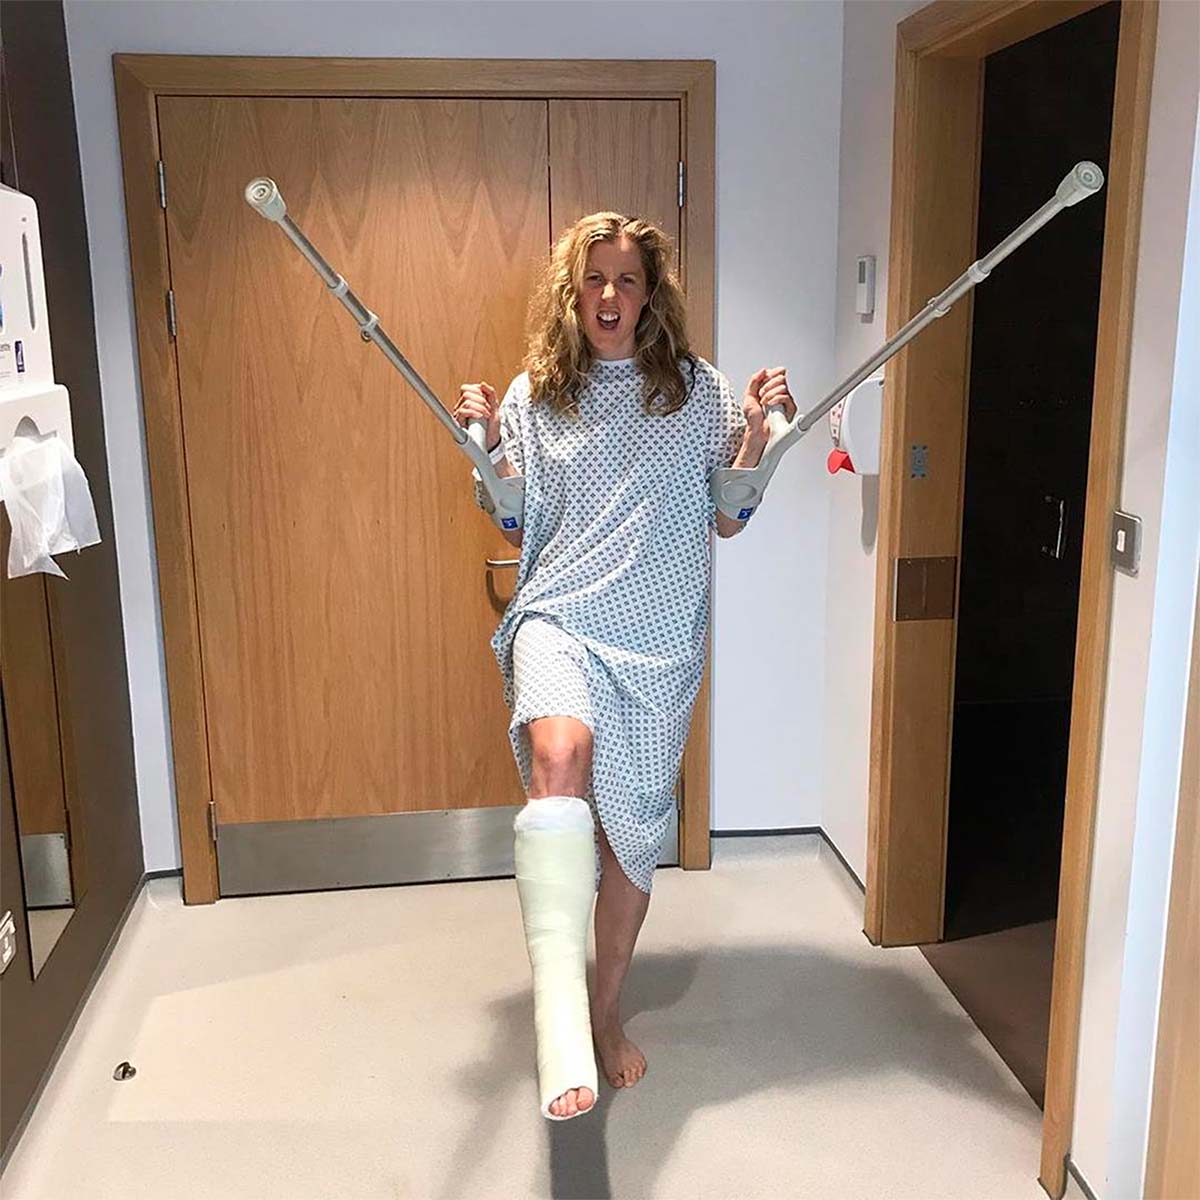 En TodoMountainBike: Rachel Atherton confirma una rotura del tendón de Aquiles y dice adiós a la Copa del Mundo de Descenso